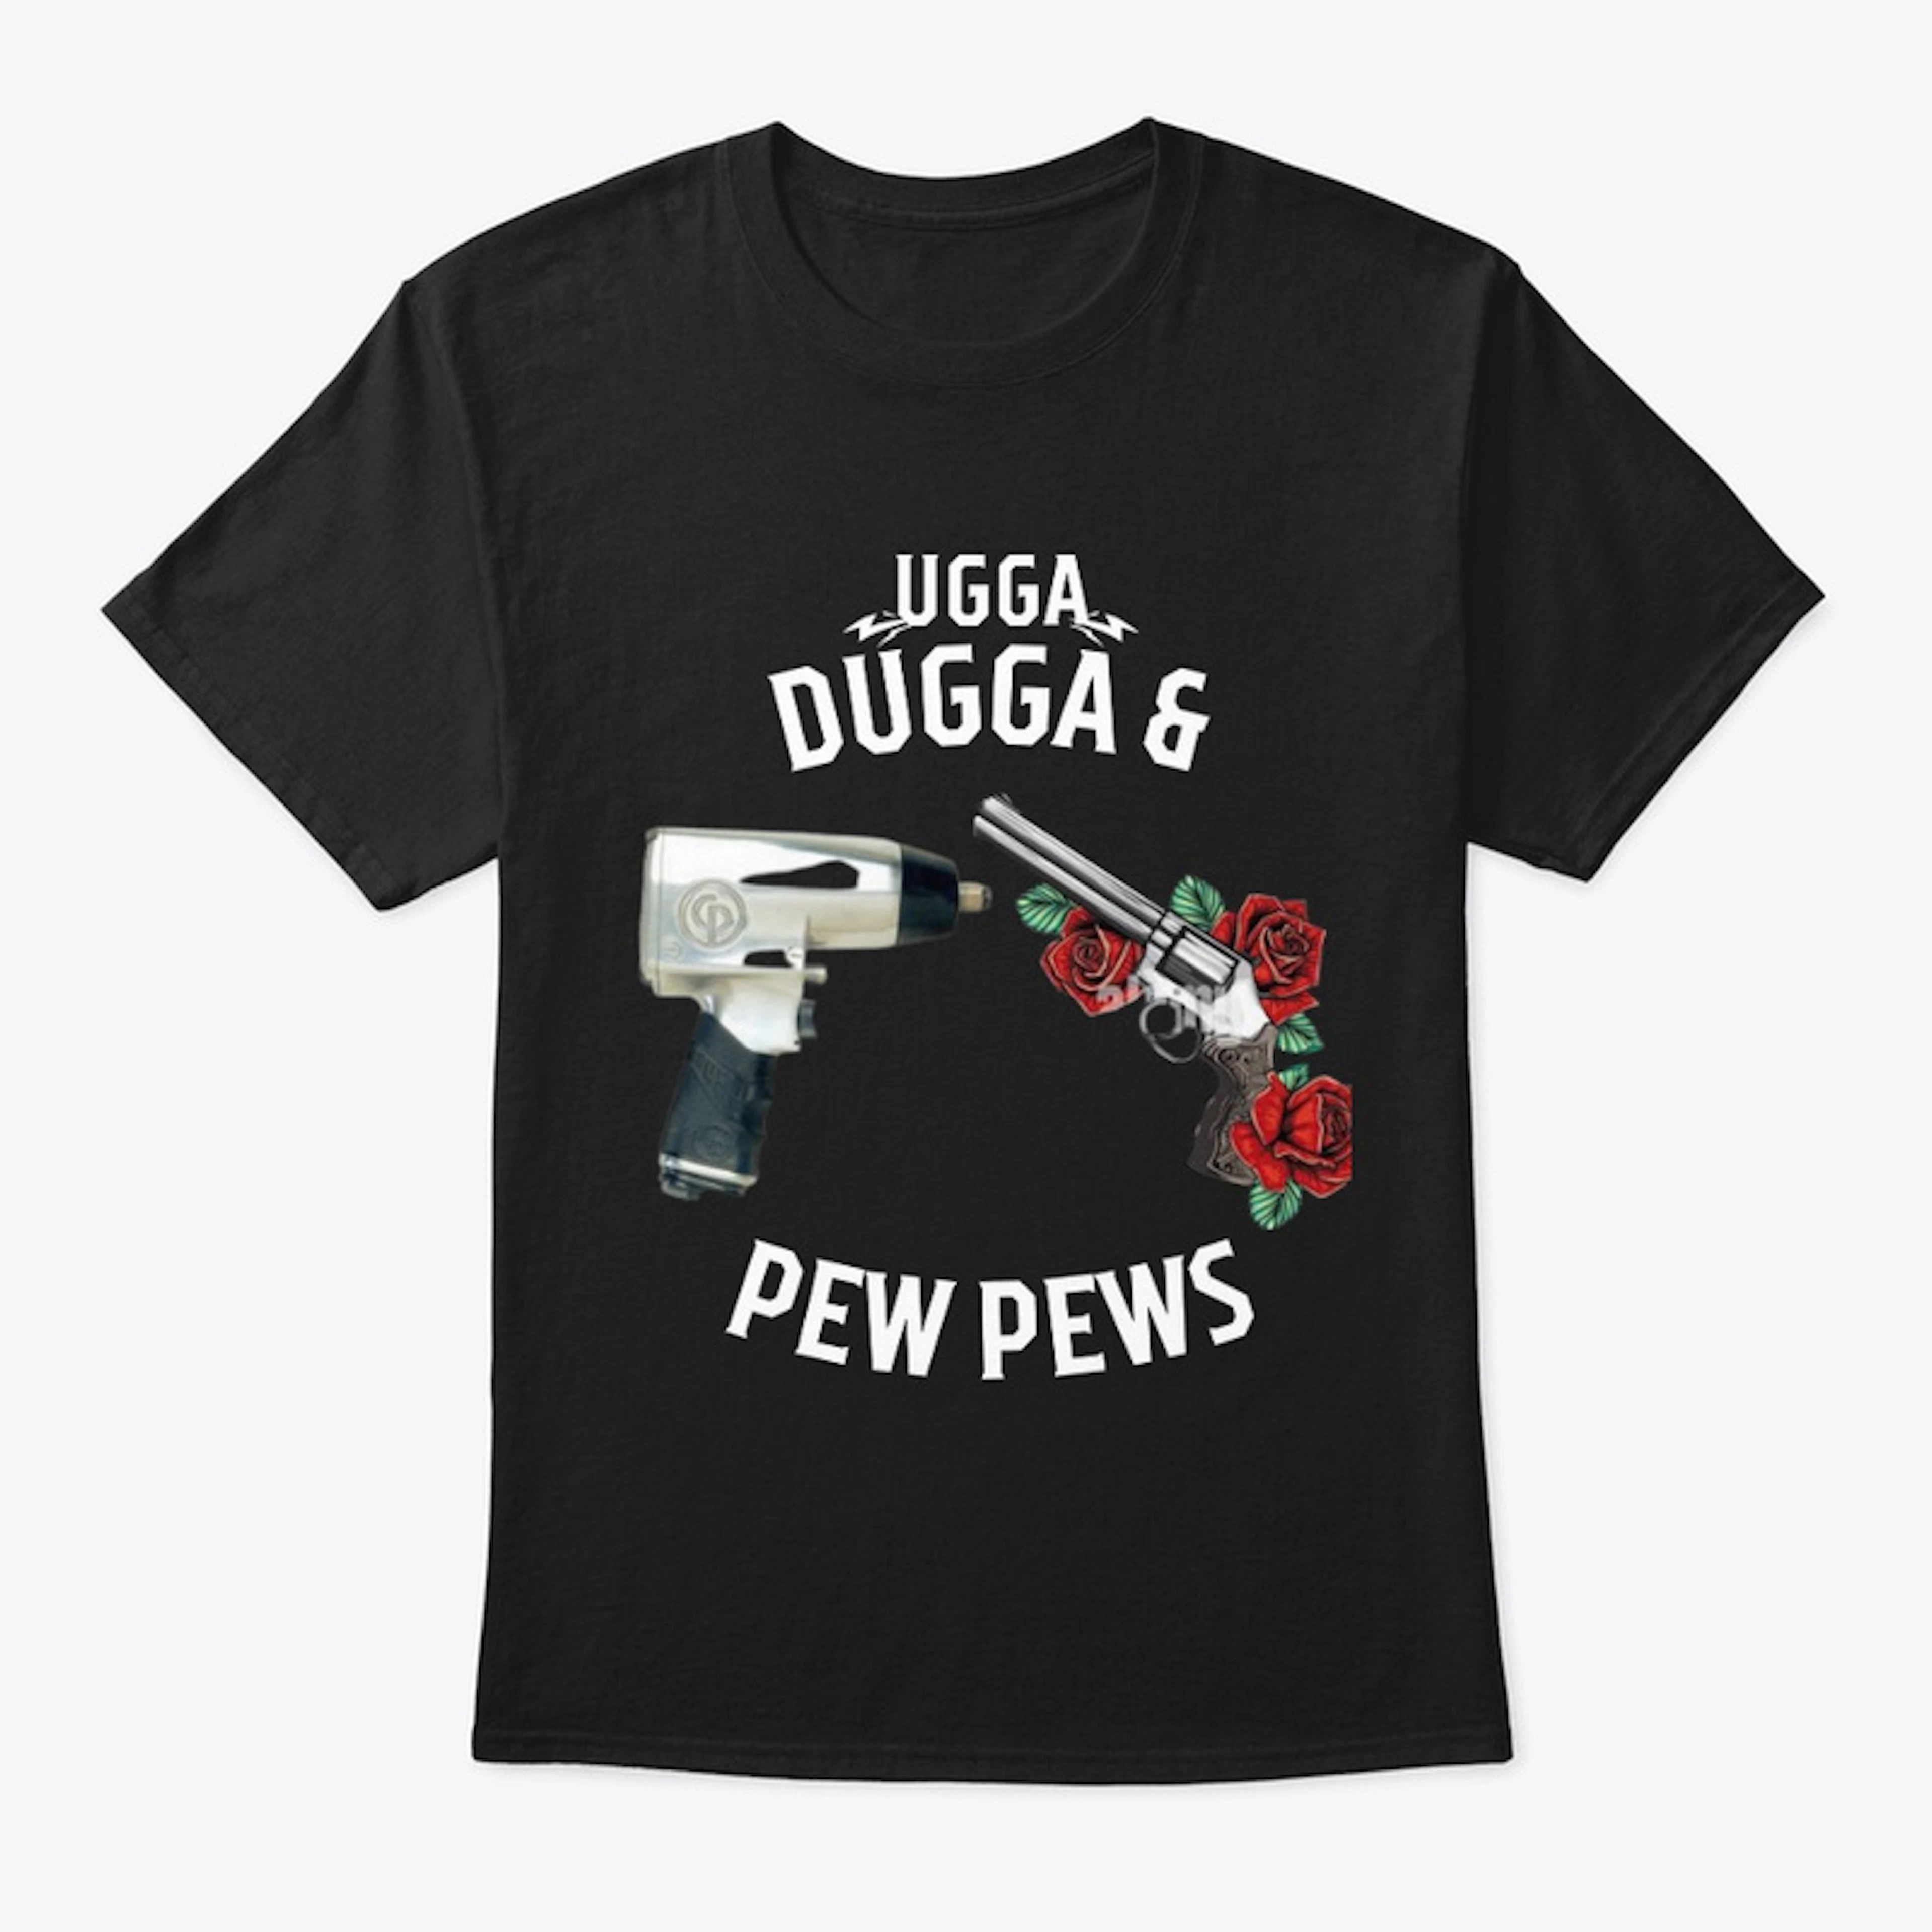 Ugga Dugga collection